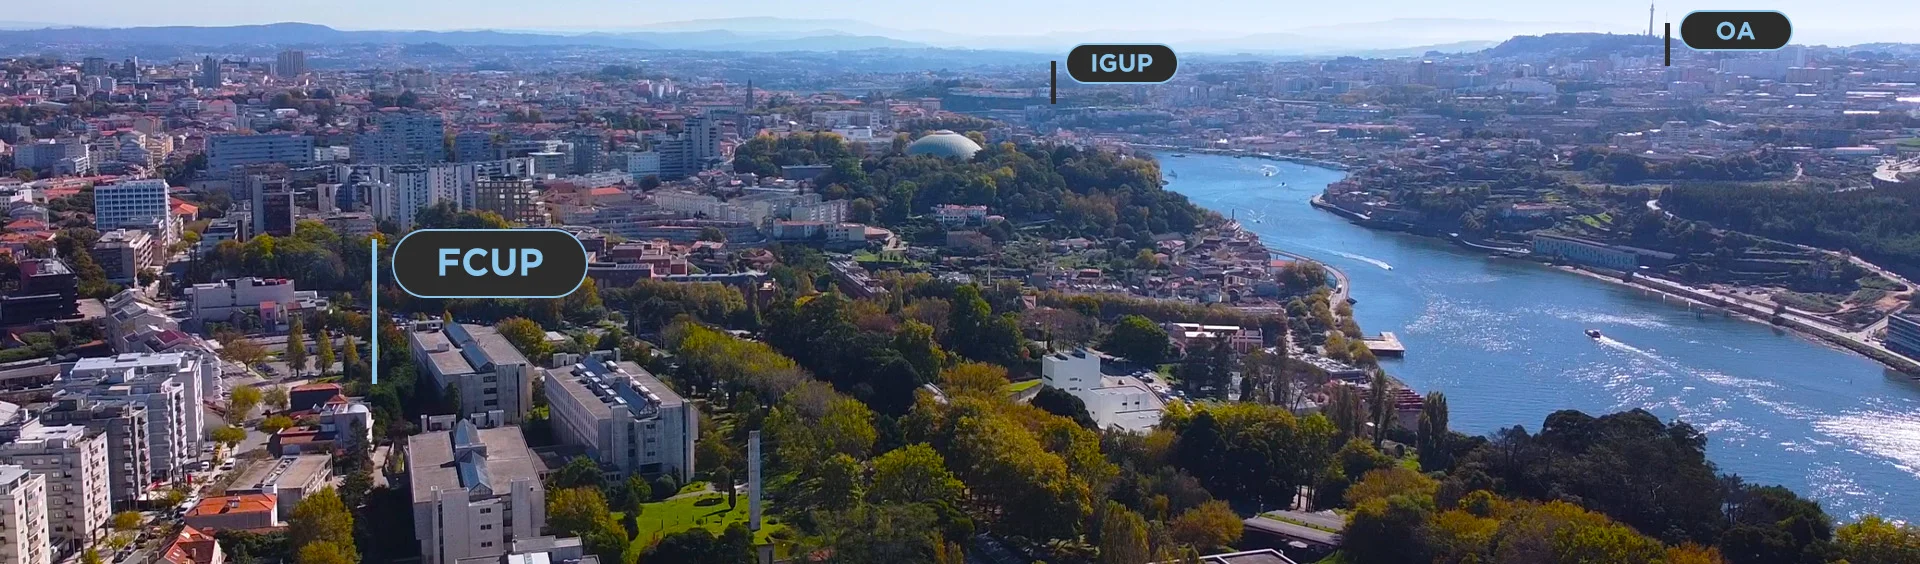 Vista aérea da Faculdade de Ciências da Universidade do Porto